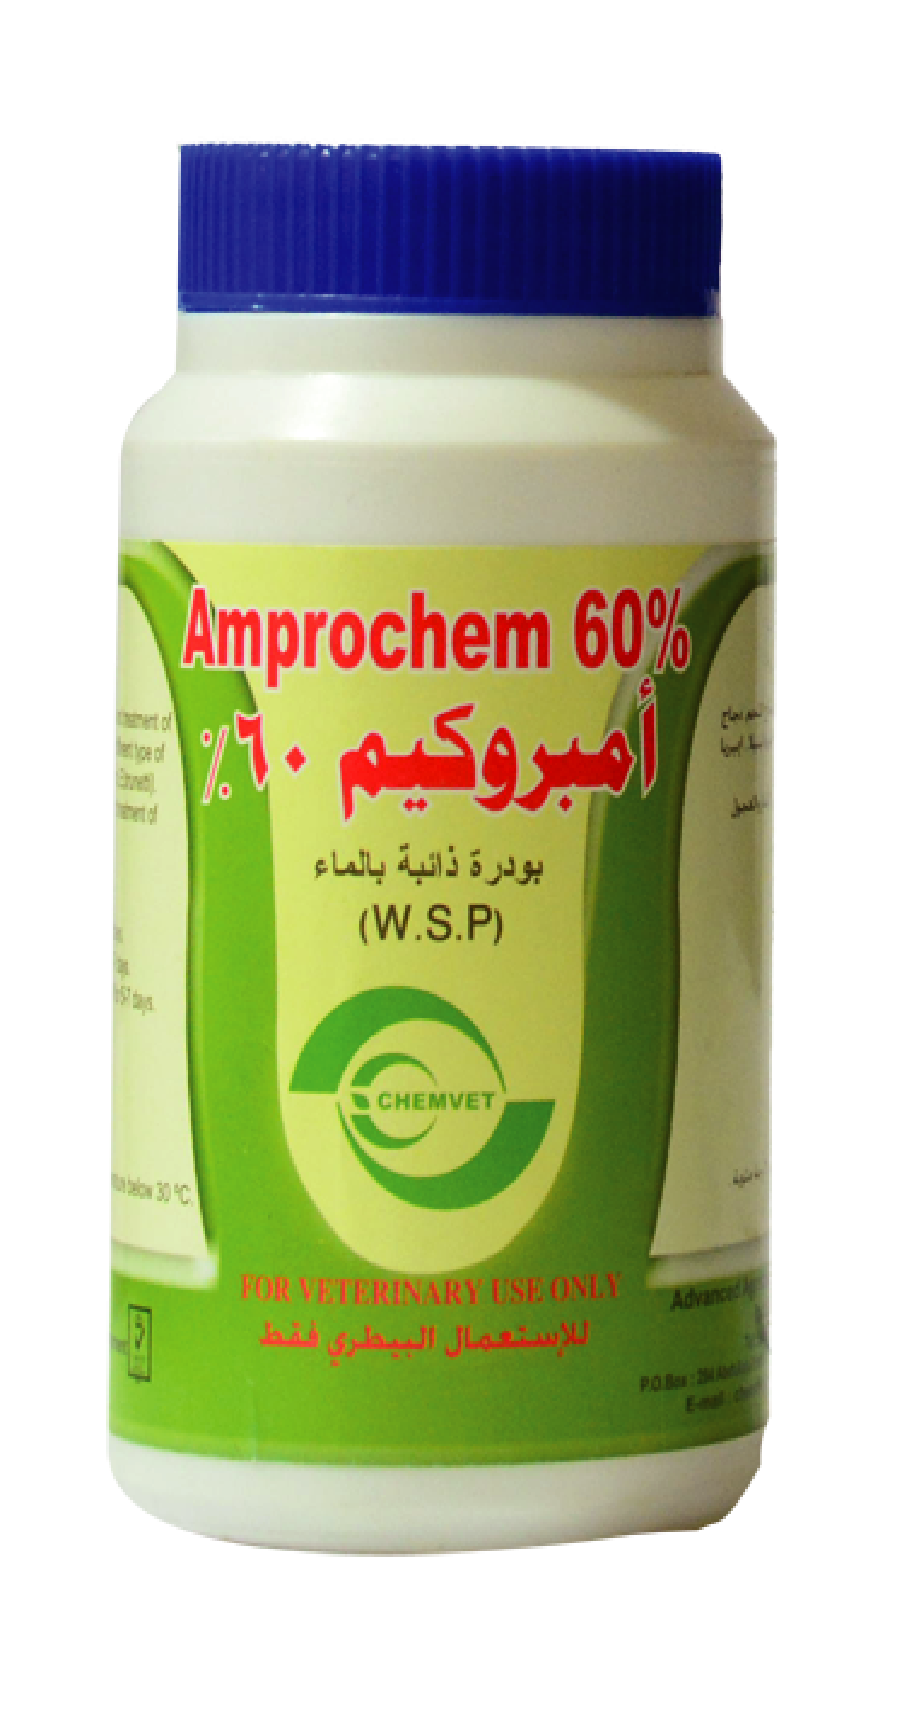 AMPROCHEM 60